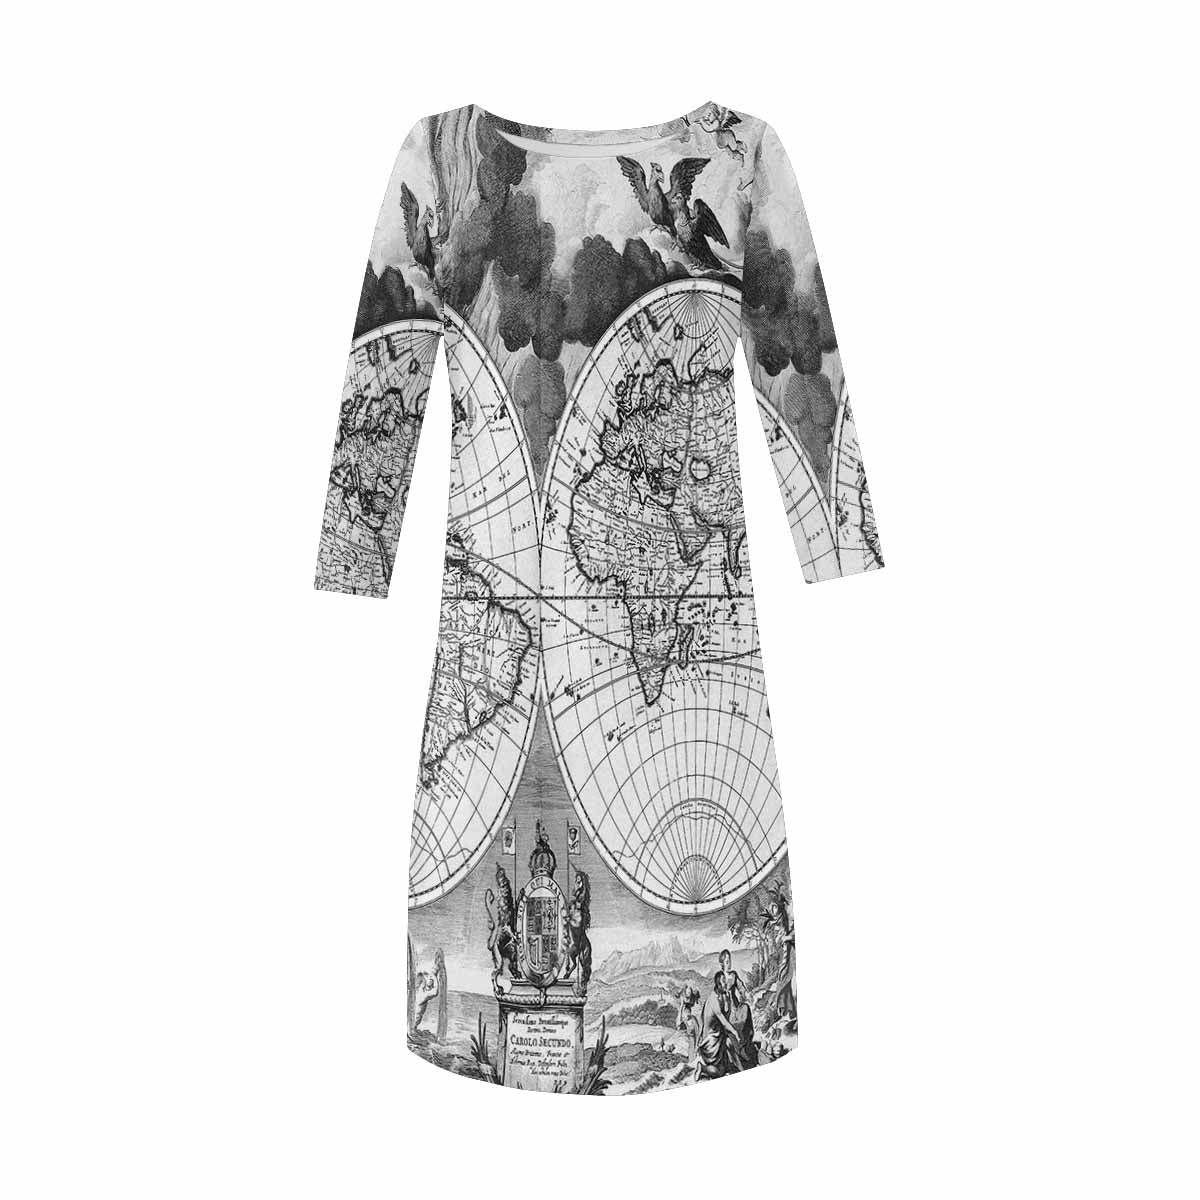 Antique Map loose dress, MODEL 29532, design 09